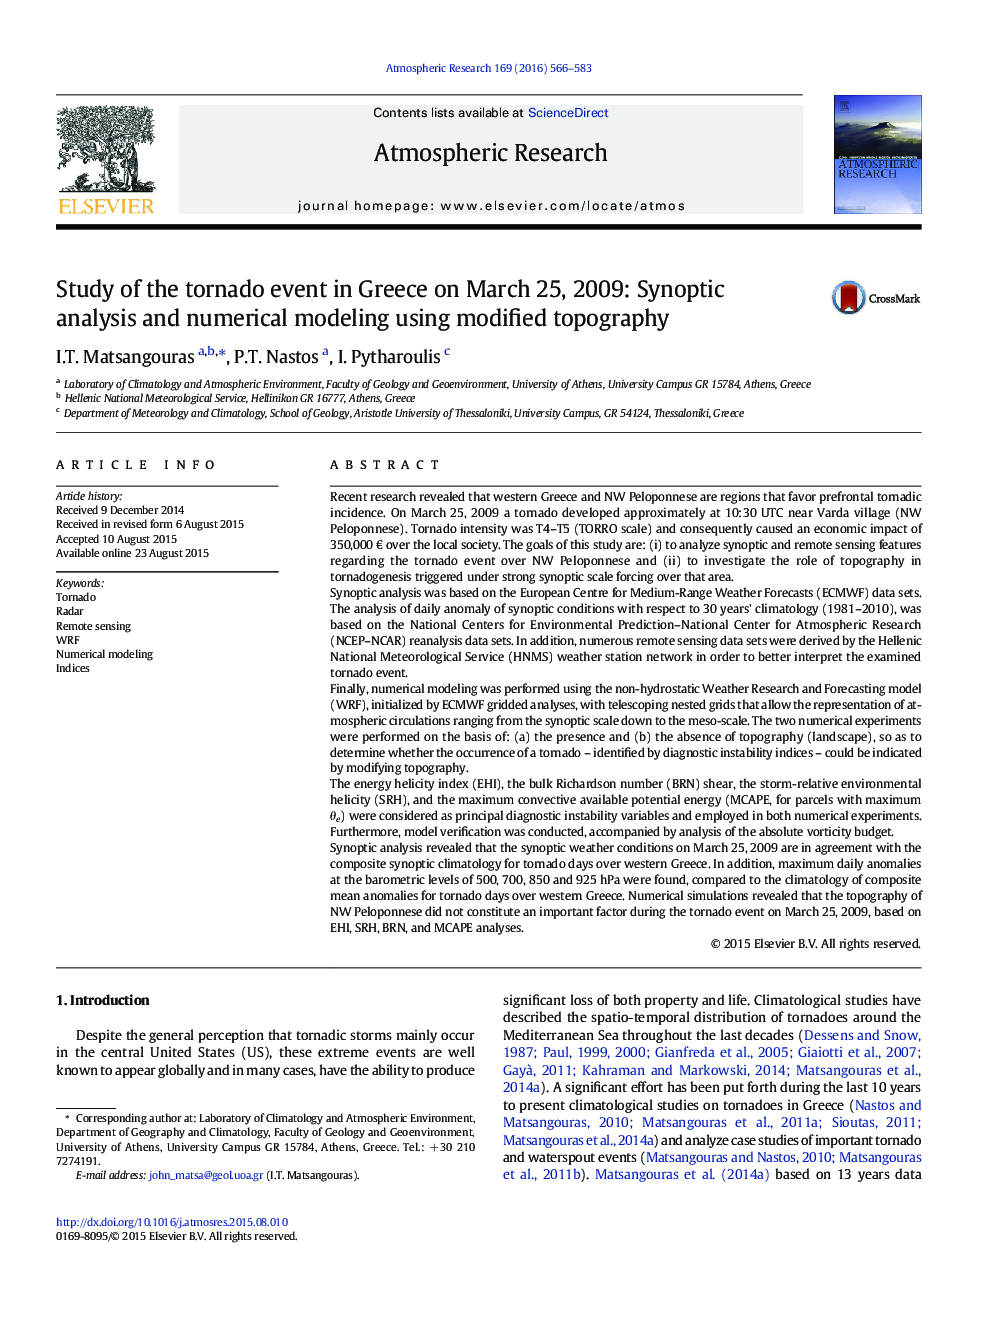 مطالعه رویداد گردباد در یونان در 25 مارس 2009: تجزیه و تحلیل سینوپتیک و مدلسازی عددی با استفاده از توپوگرافی اصلاح شده 